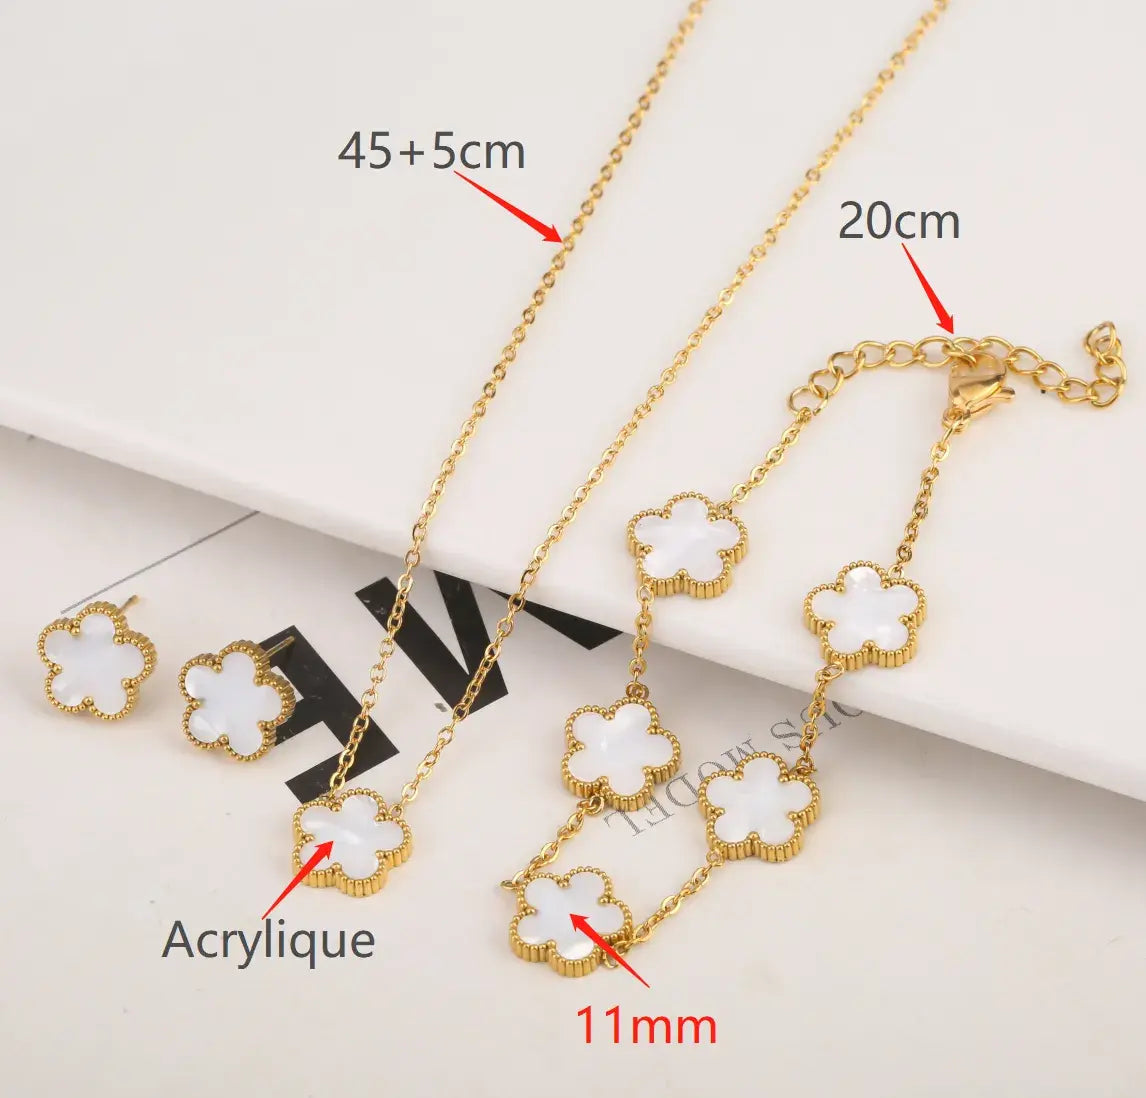 Adjustable Flower Bracelet and Necklace